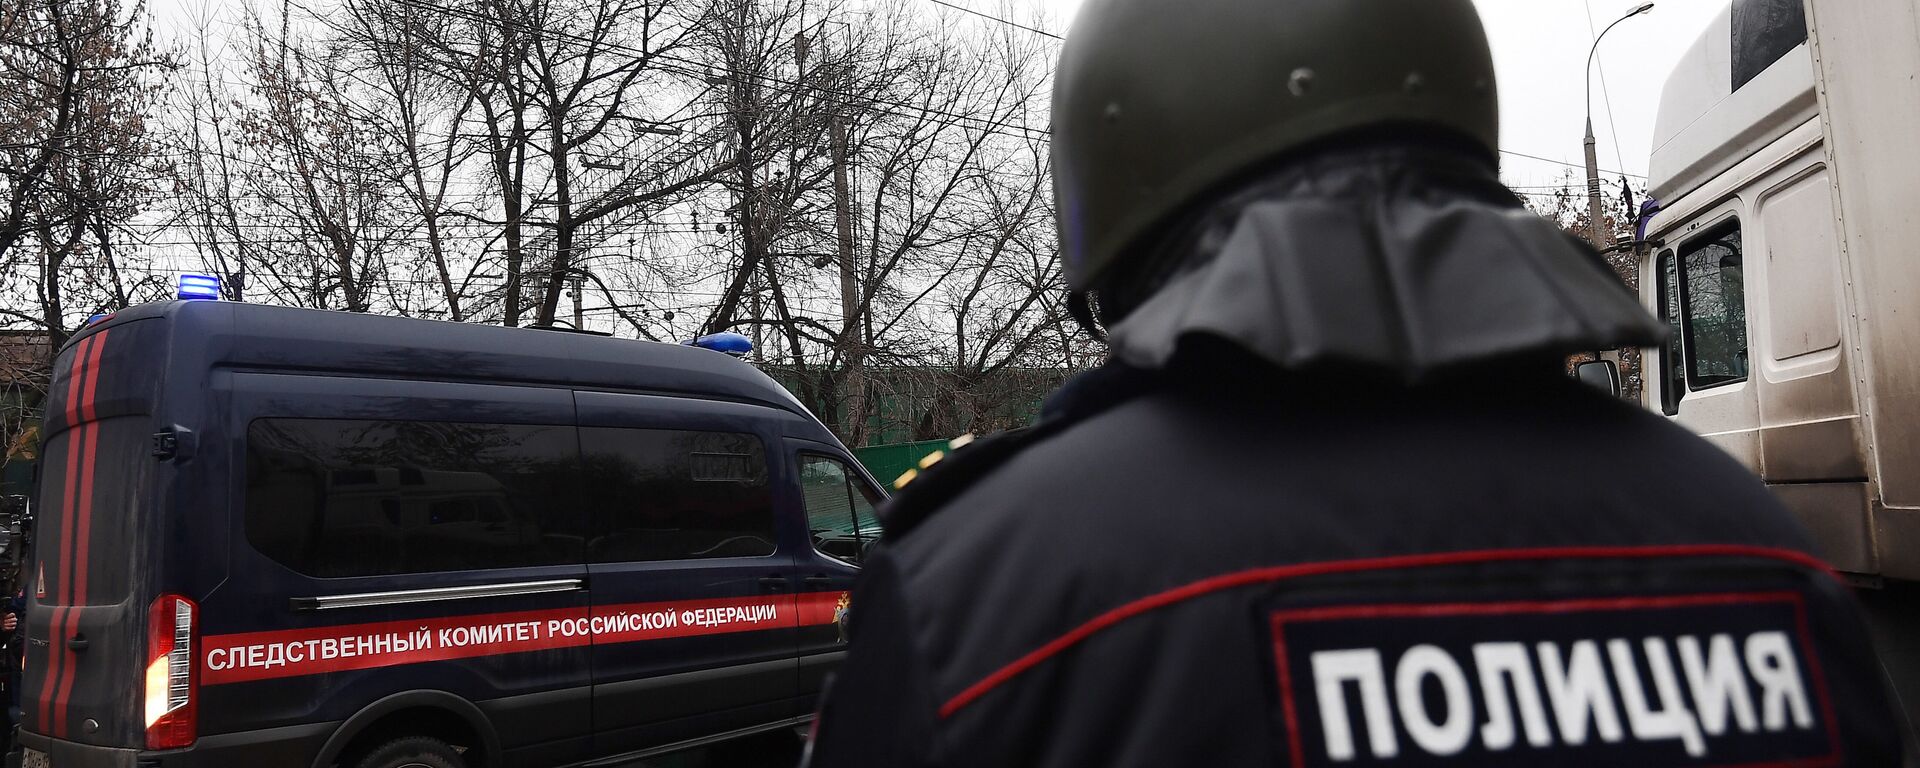 الشرطة الروسية من موقع الحدث - إطلاق نار واحتجاز رهائن في شركة جنوب موسكو، روسيا 27 ديسمبر/ كانون الأول 2017 - سبوتنيك عربي, 1920, 03.02.2021